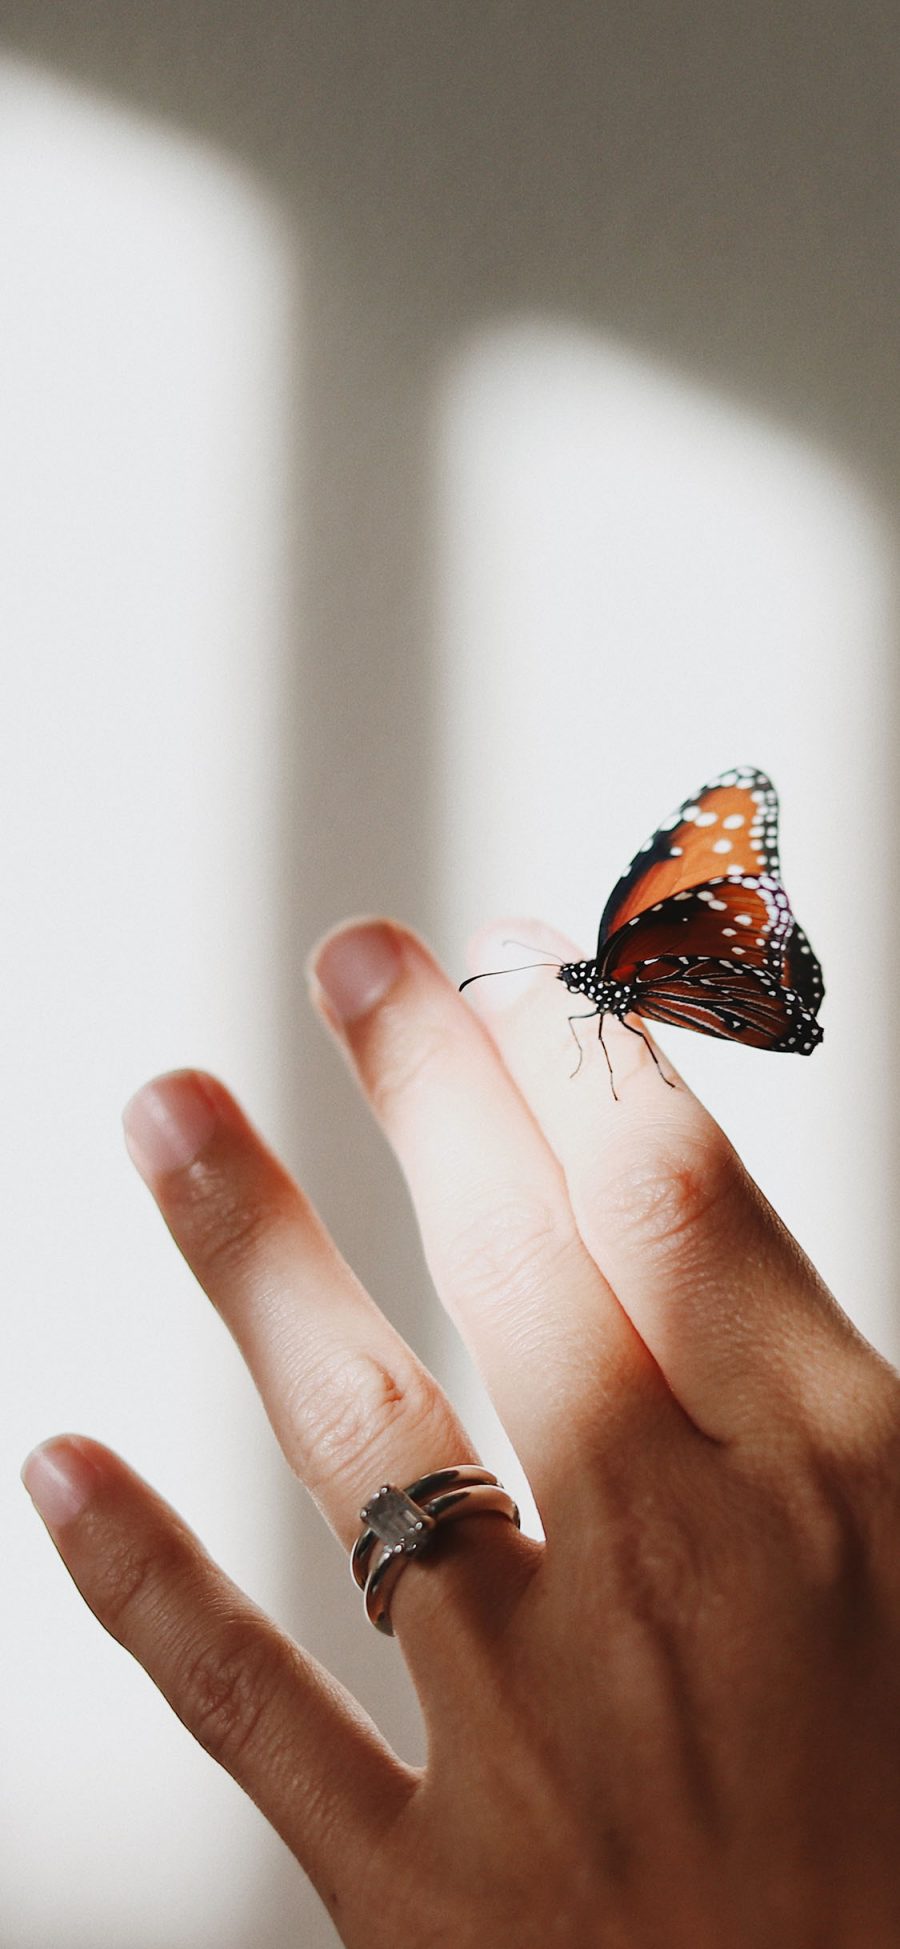 [2436×1125]手 戒指 指尖 蝴蝶 昆虫 苹果手机壁纸图片